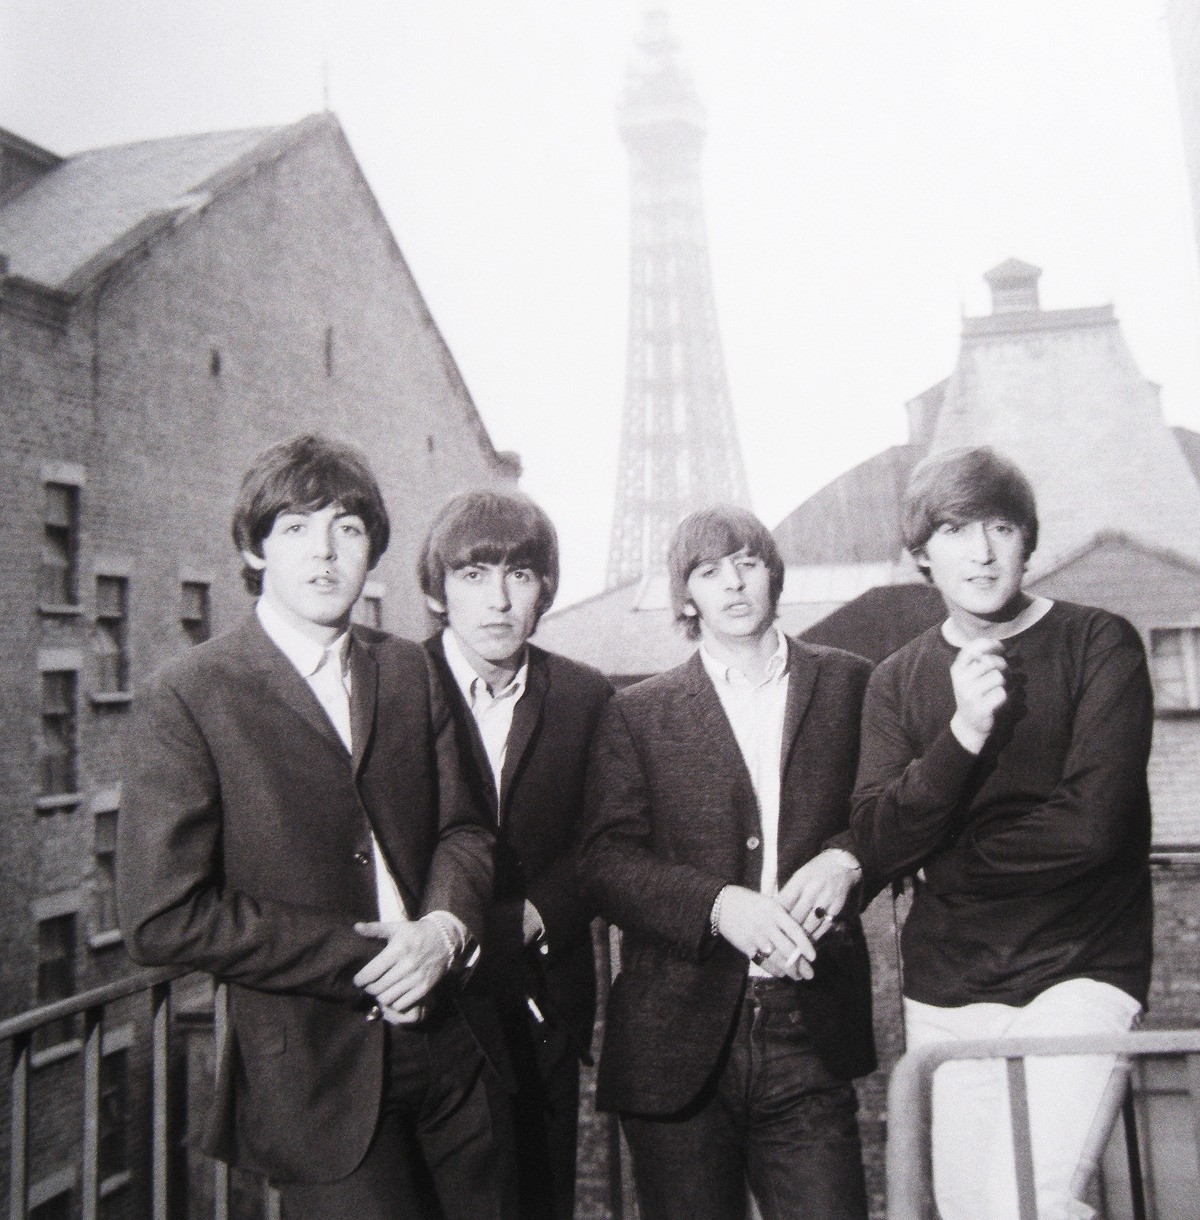 Les Beatles à Paris, 1964